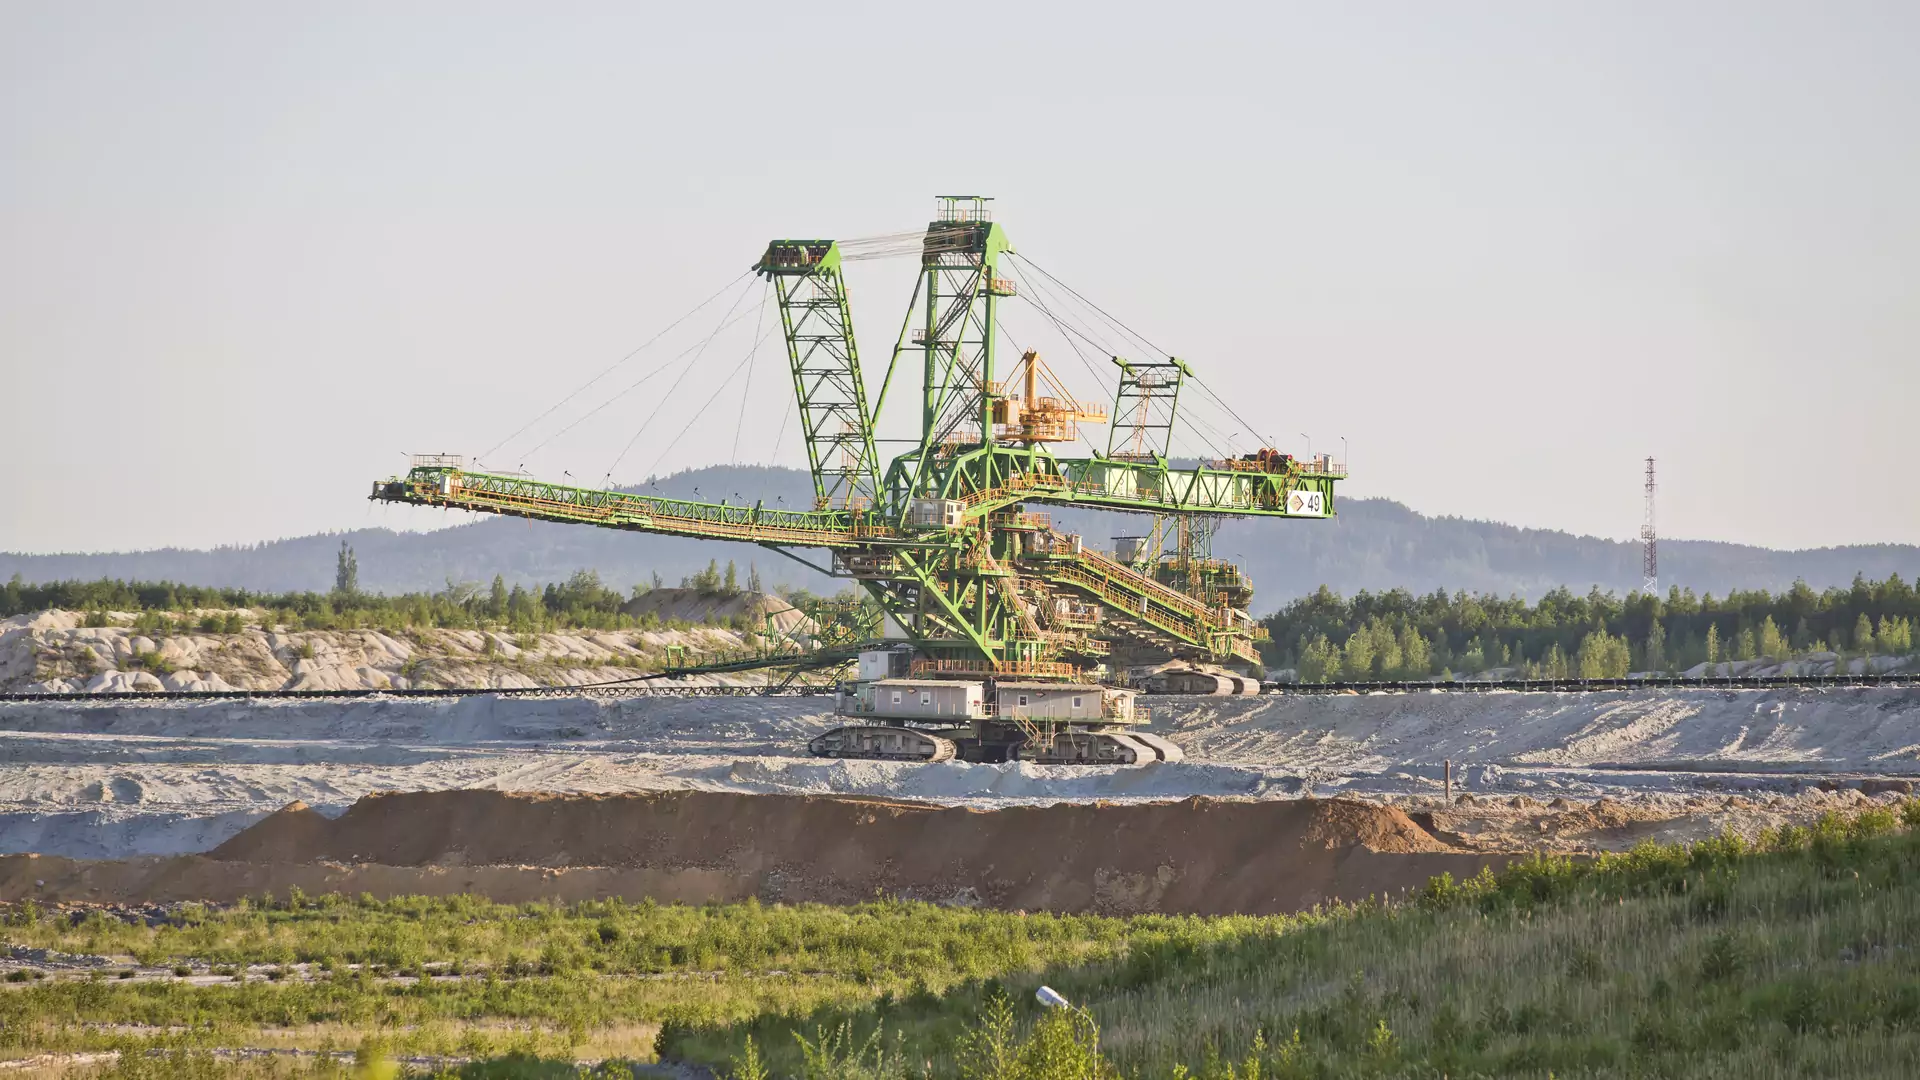 Polska zapłaci 60 mln zł miesięcznie za kopalnię Turów. "Nie dość wyrzucania publicznych pieniędzy"